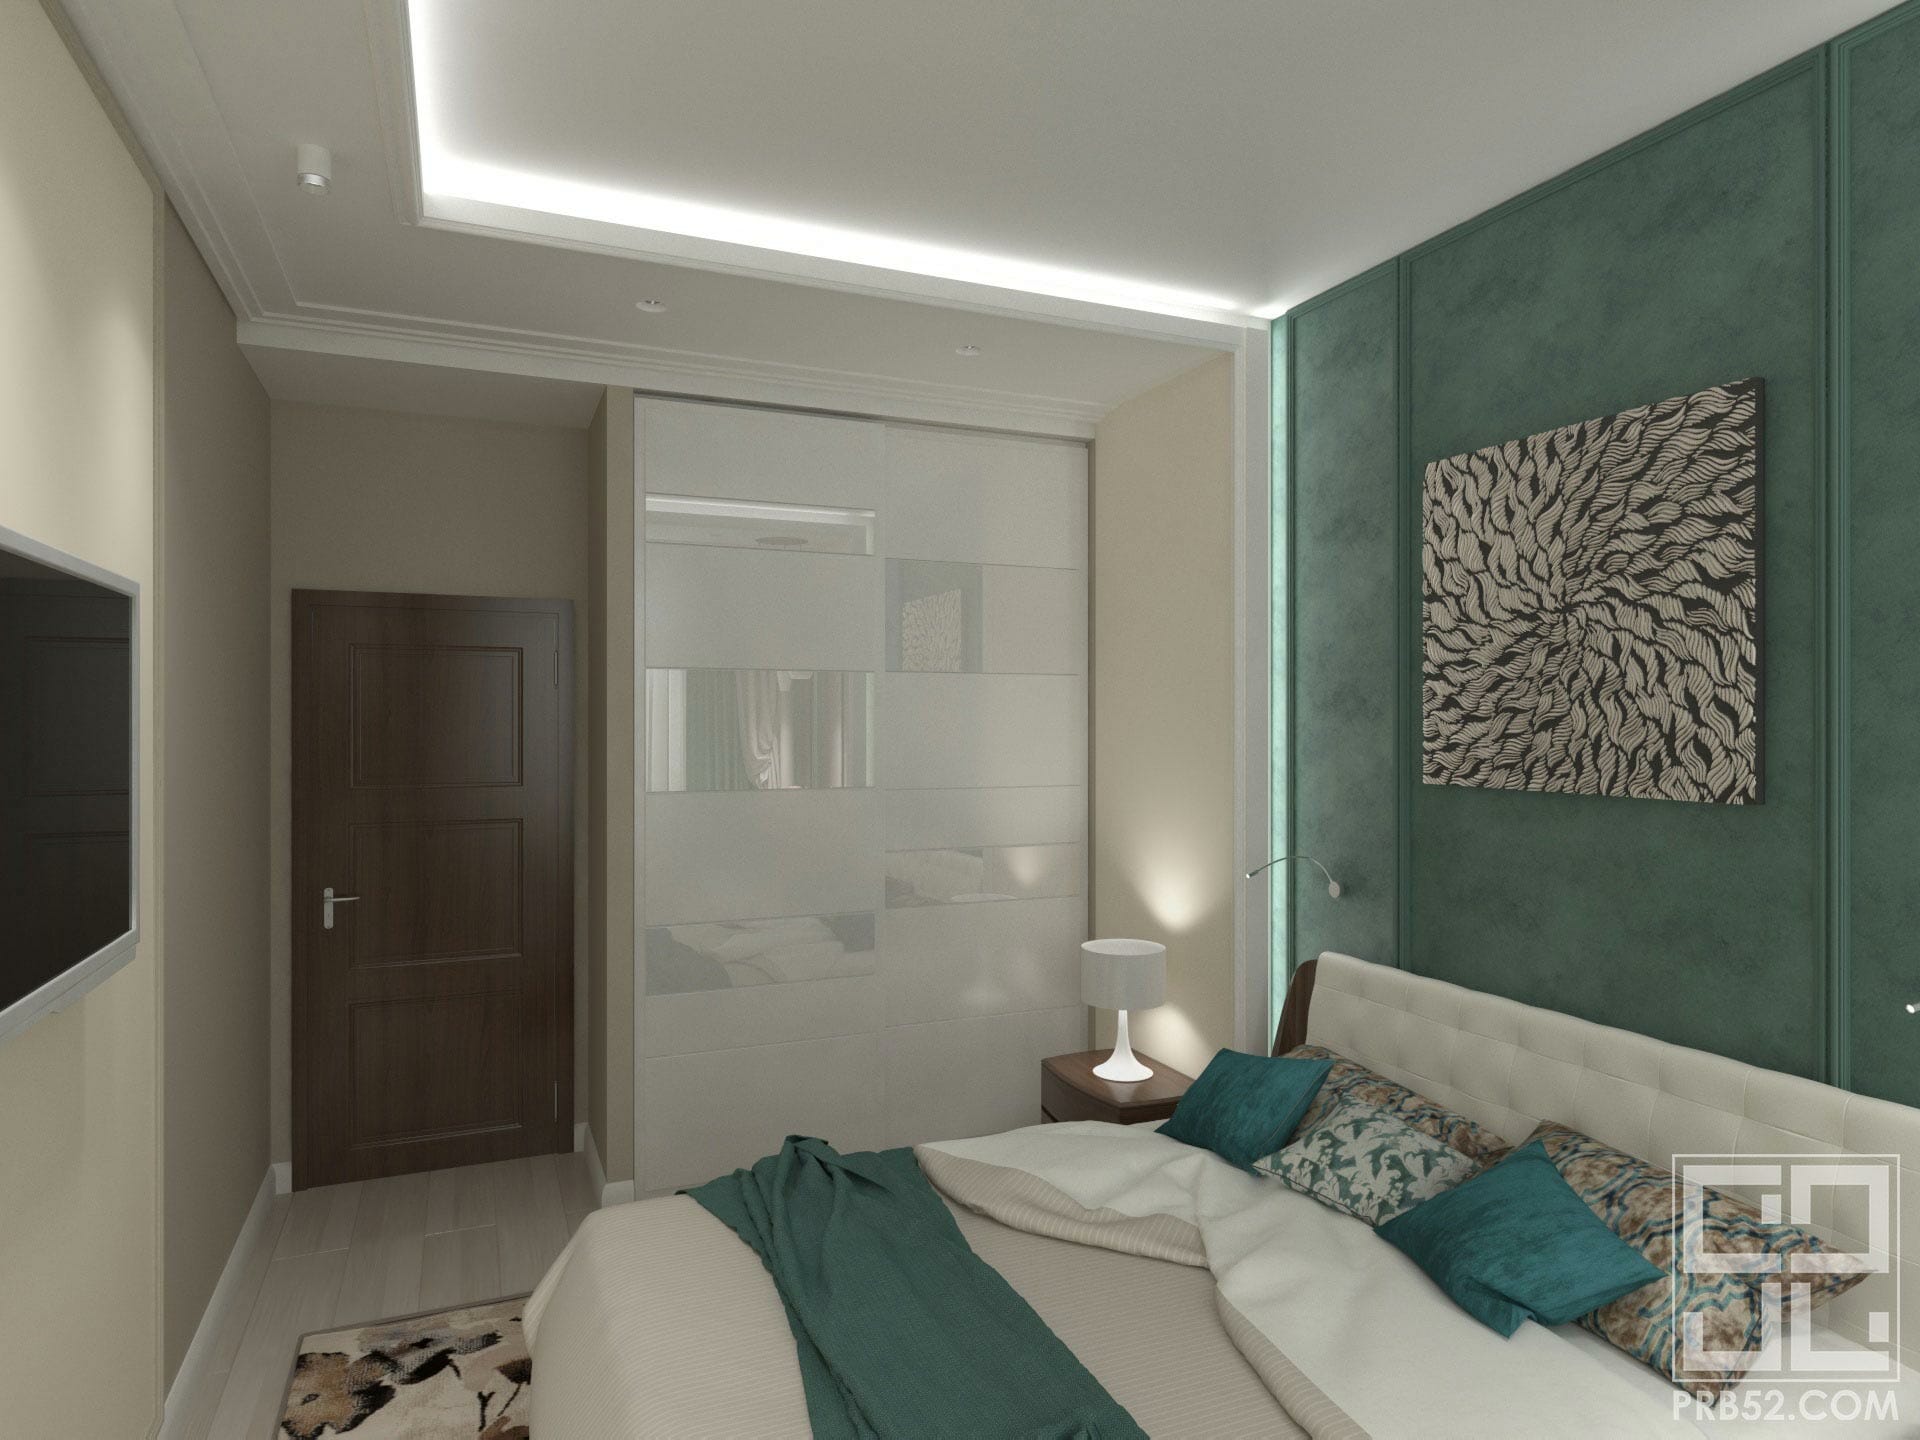 дизайн интерьера спальни с подсветкой